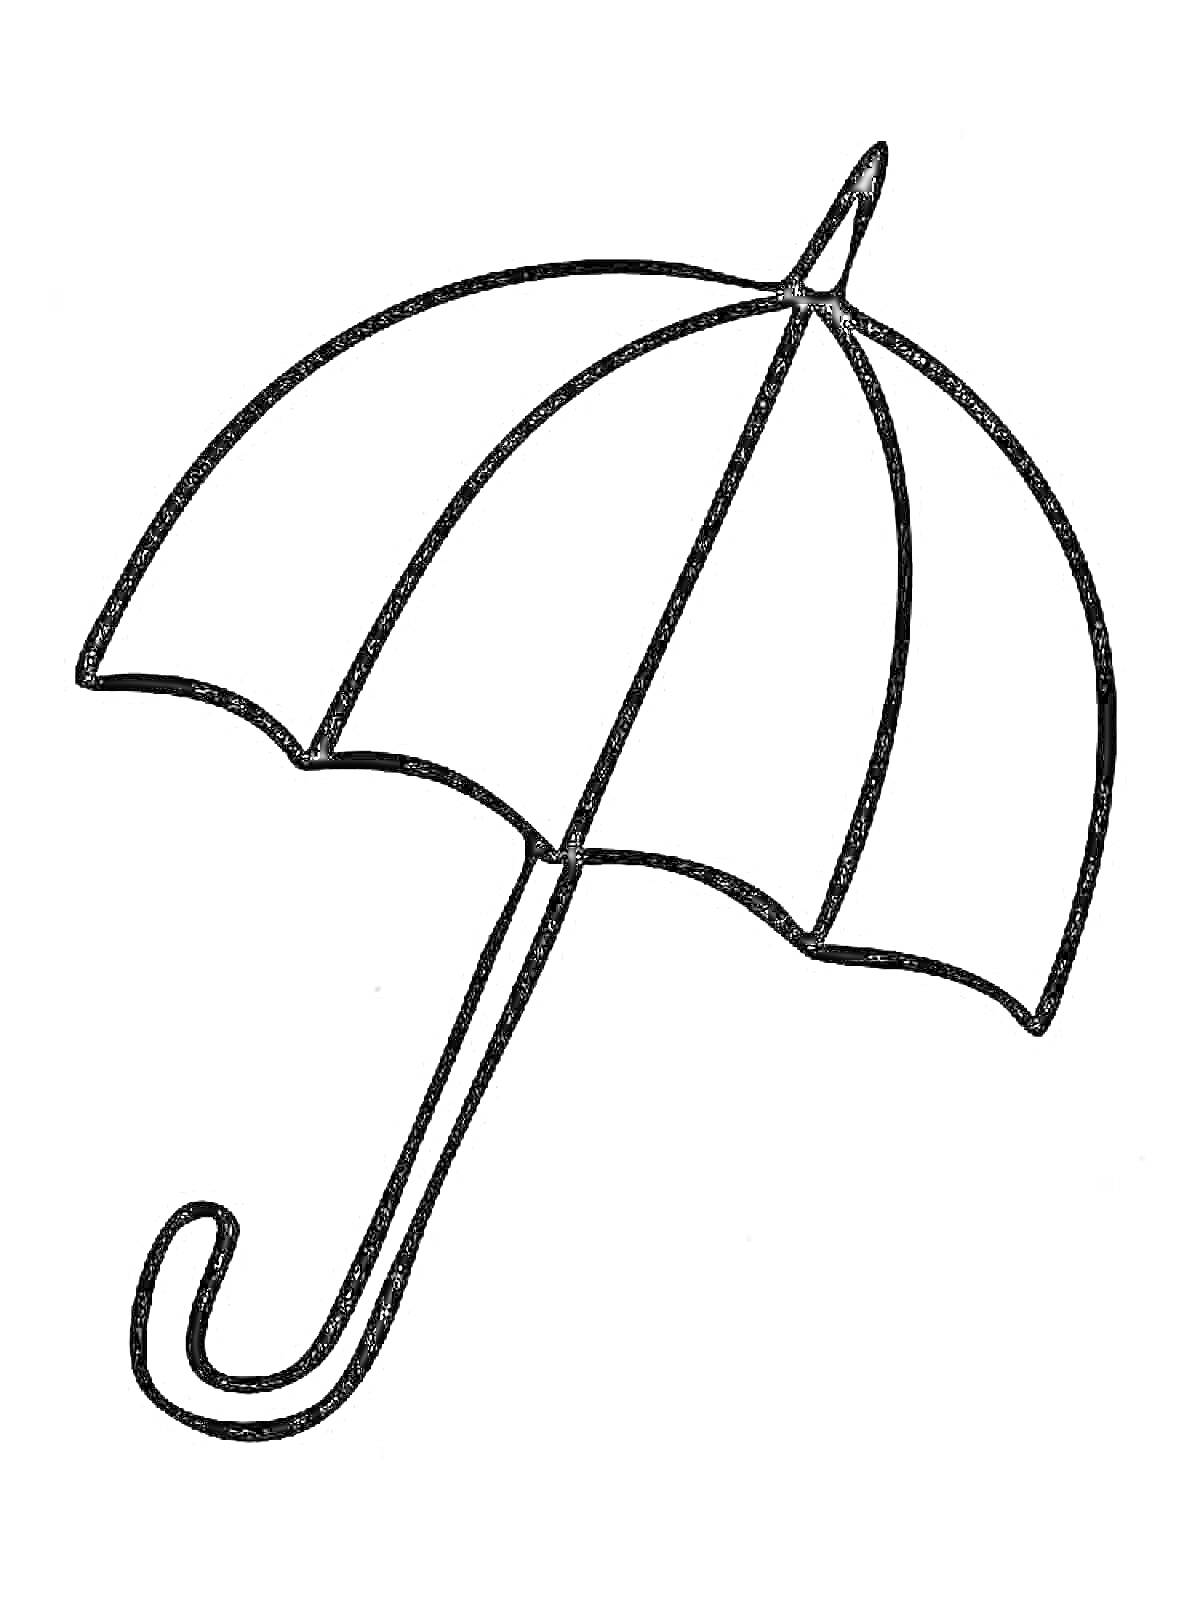 Раскраска Контур зонтика с изогнутой ручкой и восемью секциями купола